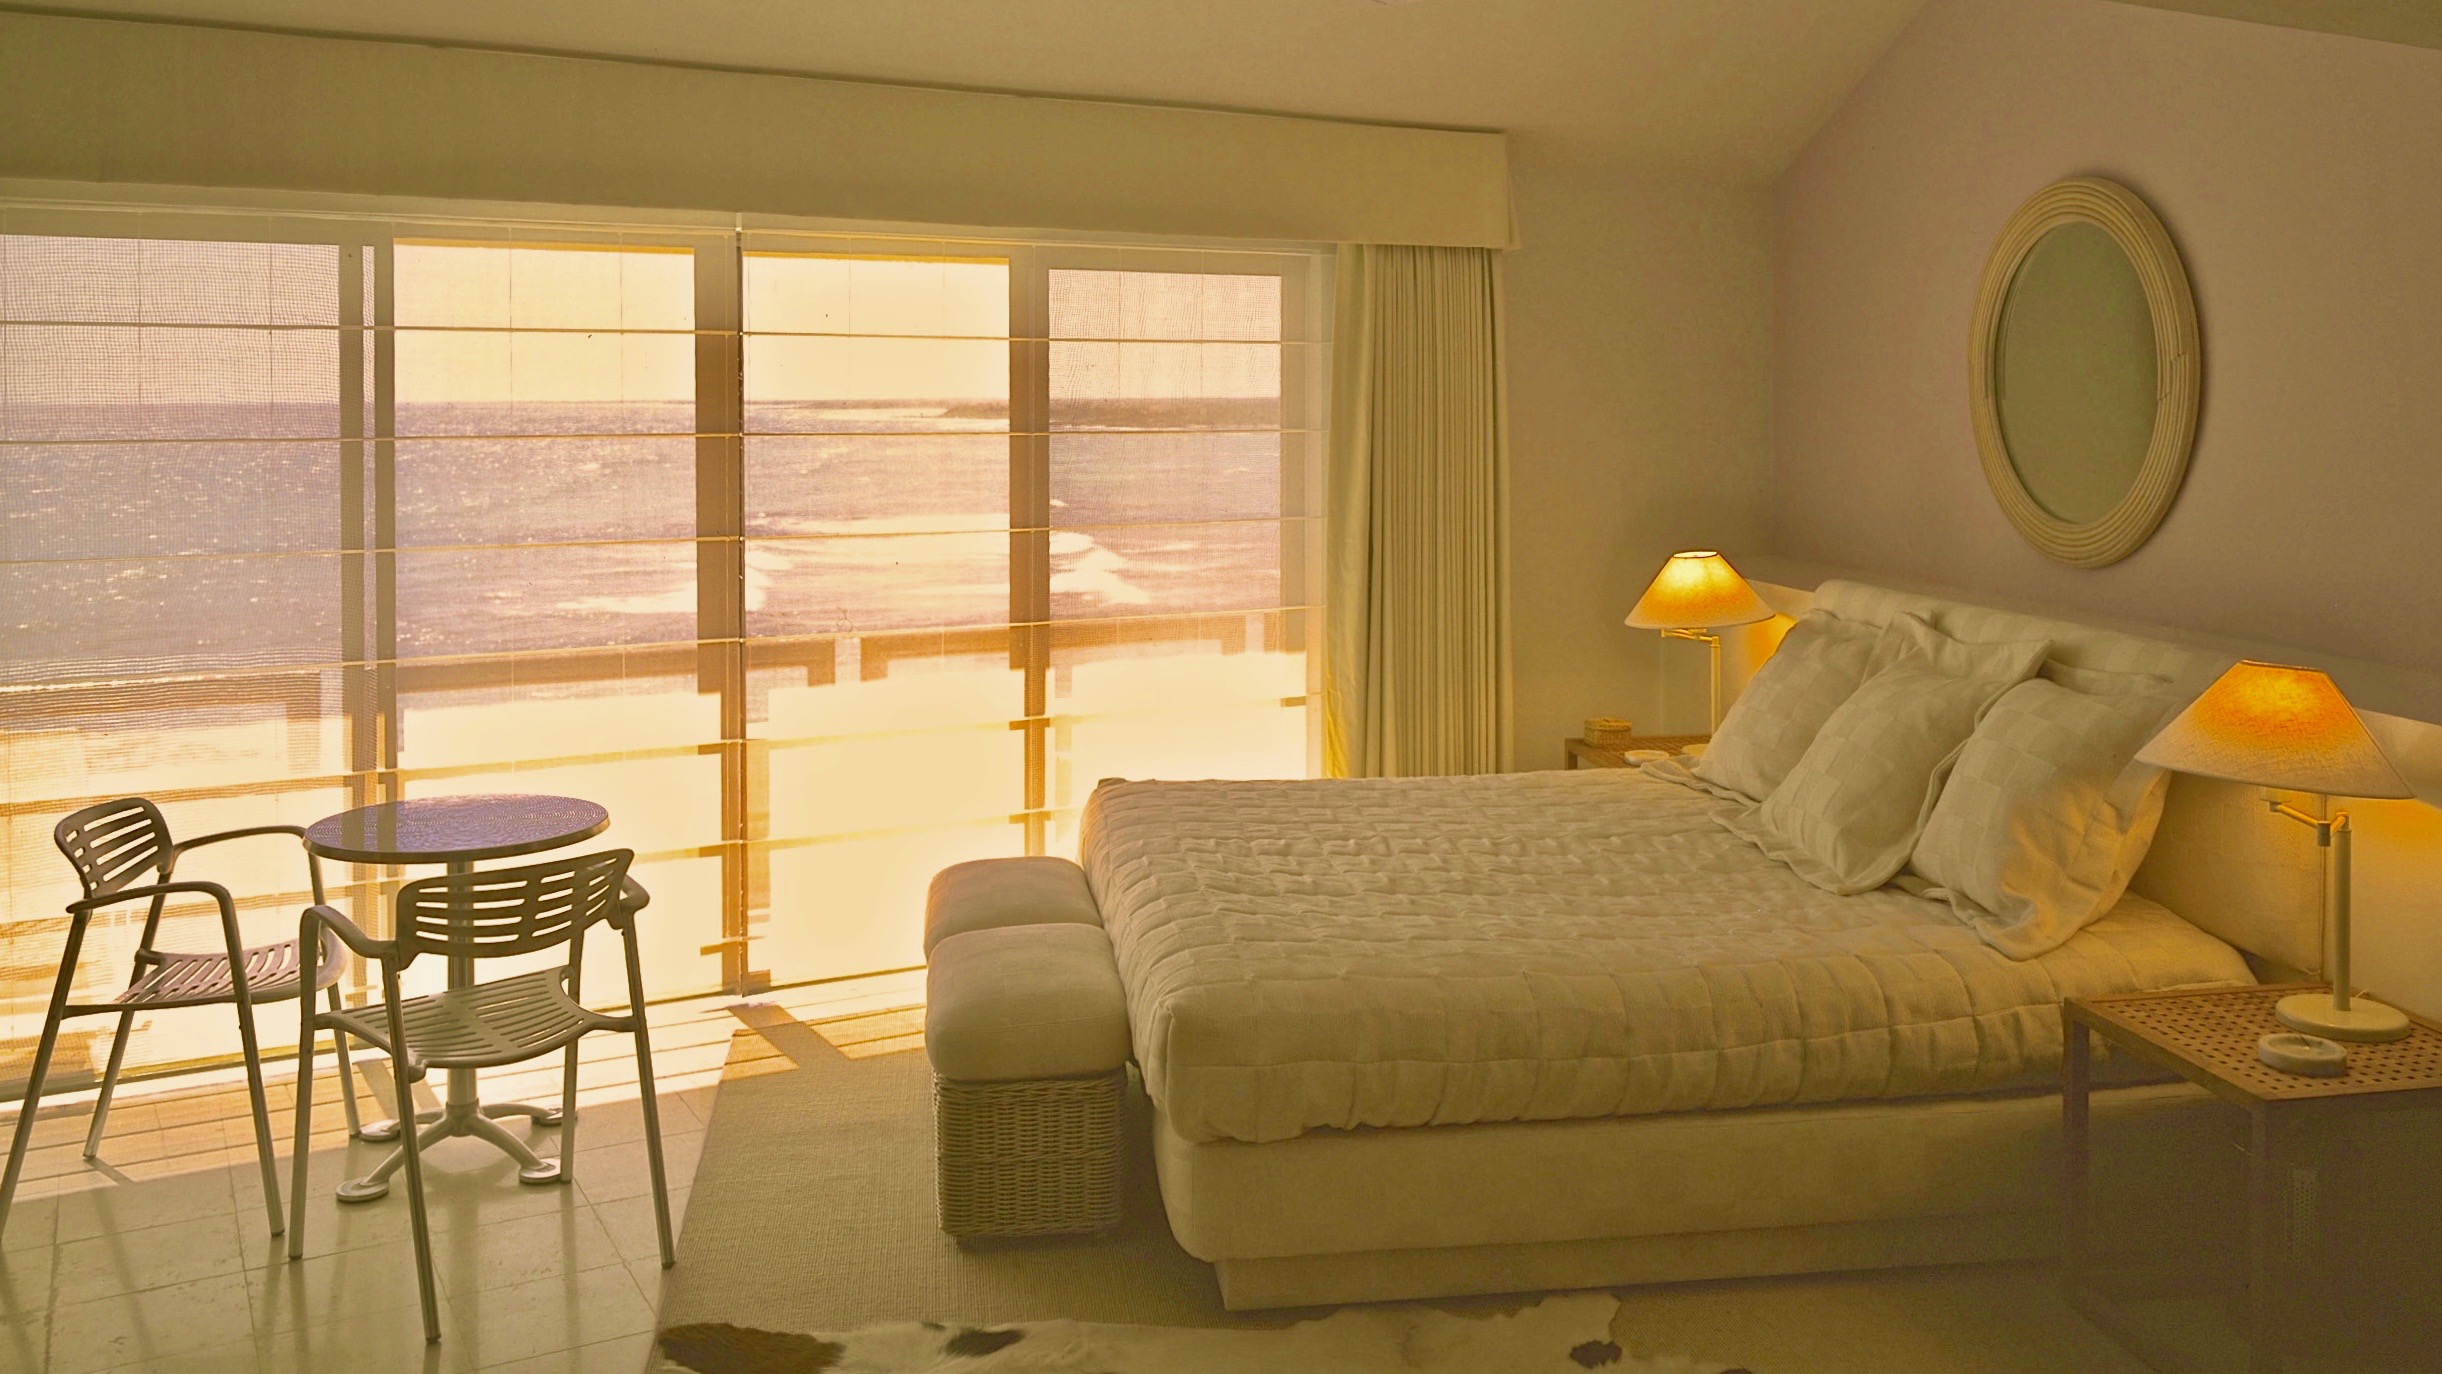 Puerto aventuras Master bedroom Jerry Jacobs Design